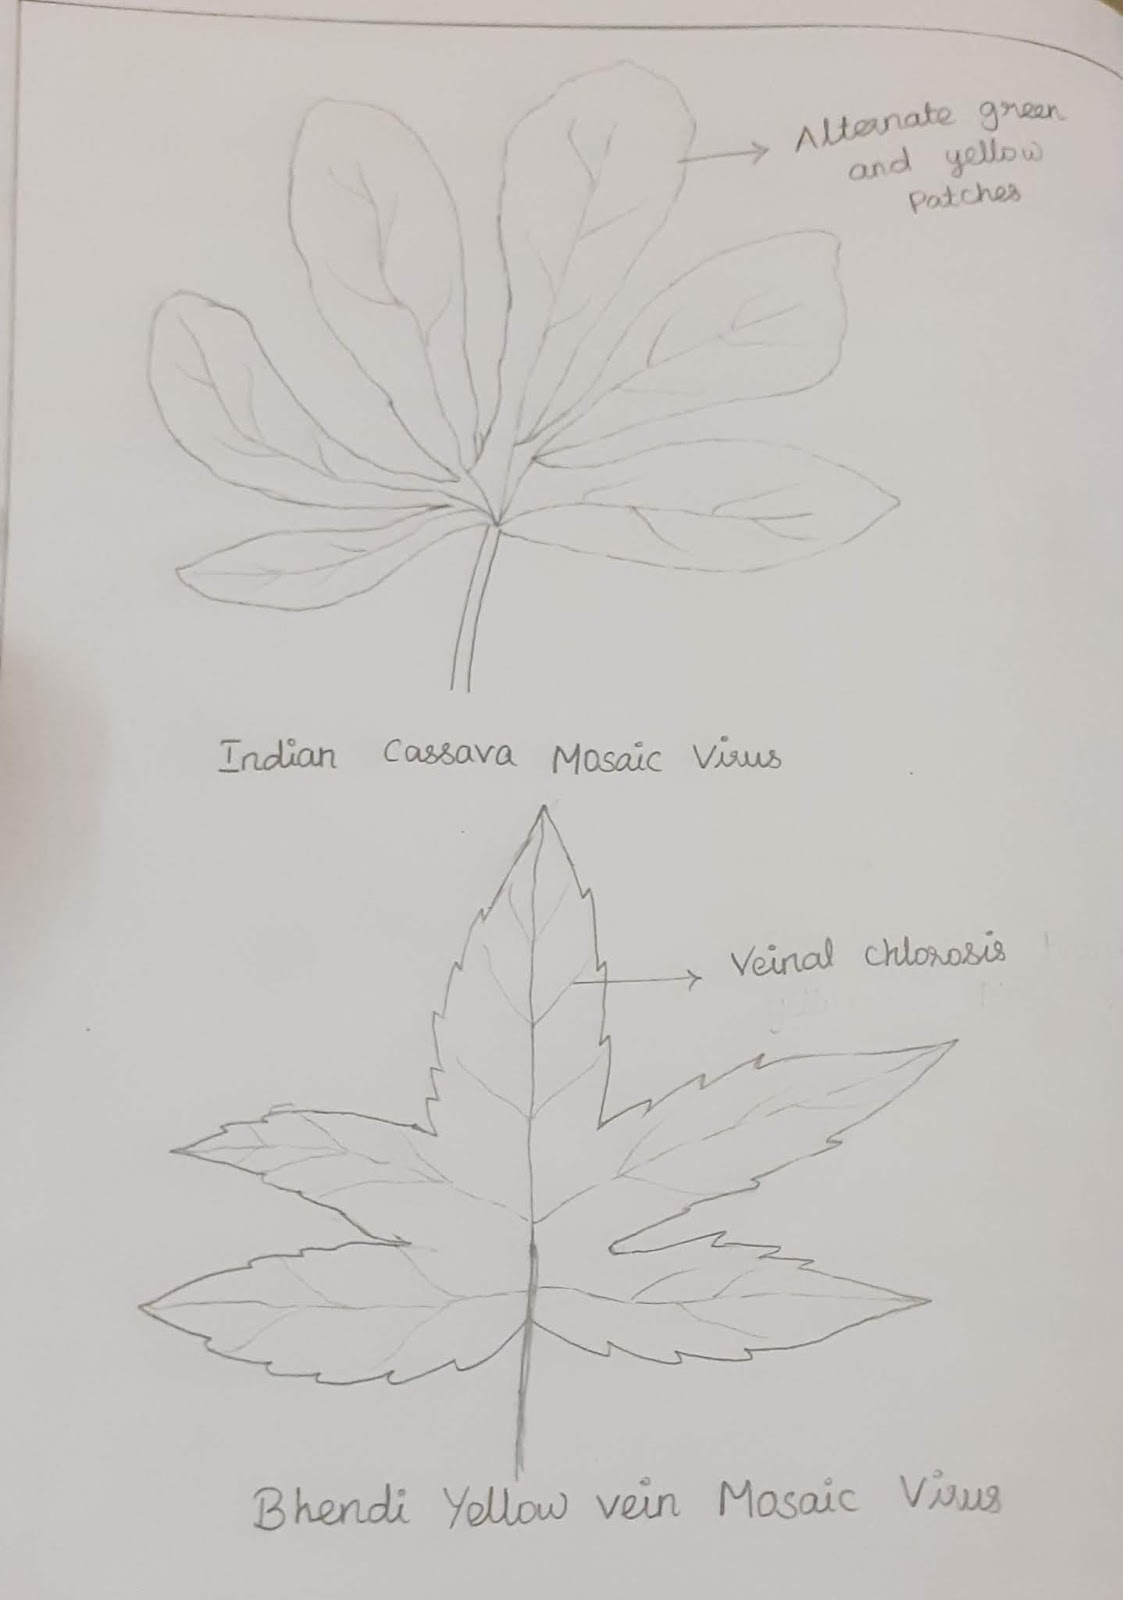 Bhindi leaf Black and White Stock Photos & Images - Alamy